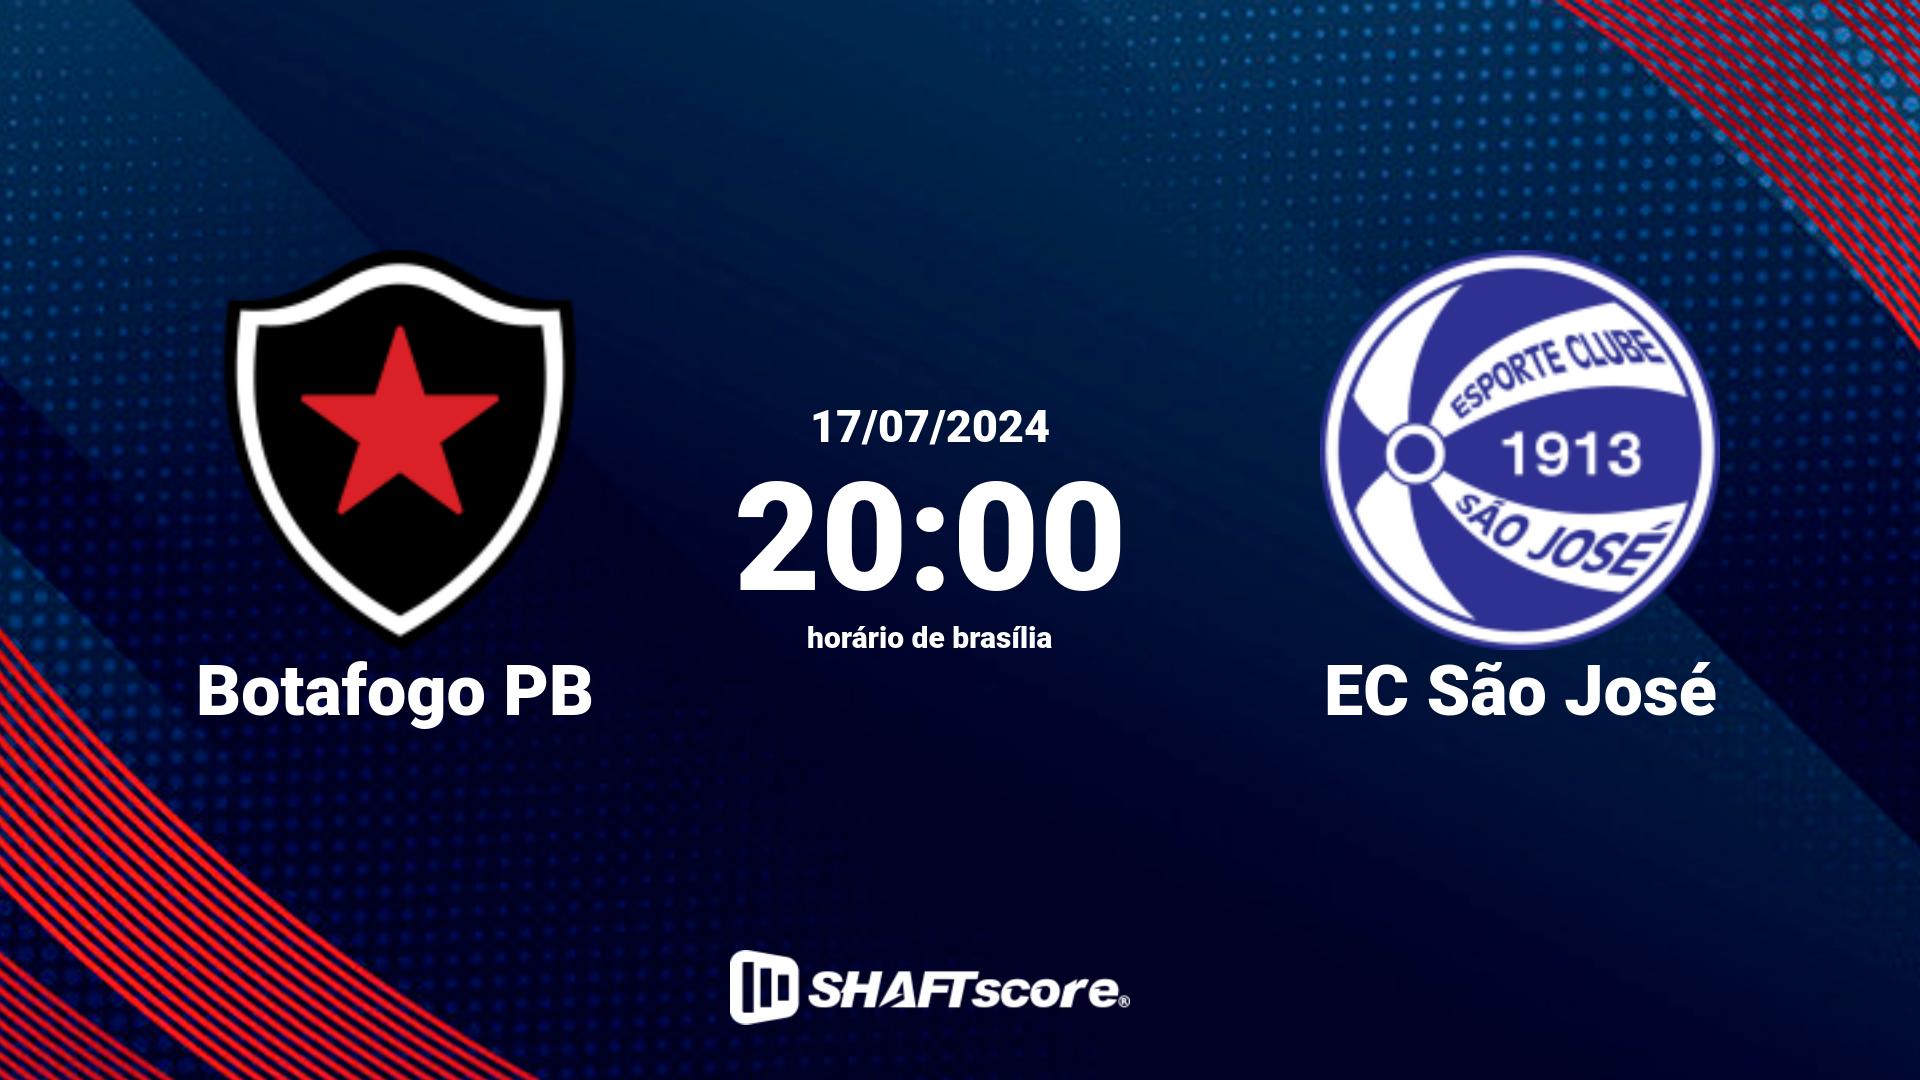 Estatísticas do jogo Botafogo PB vs EC São José 17.07 20:00